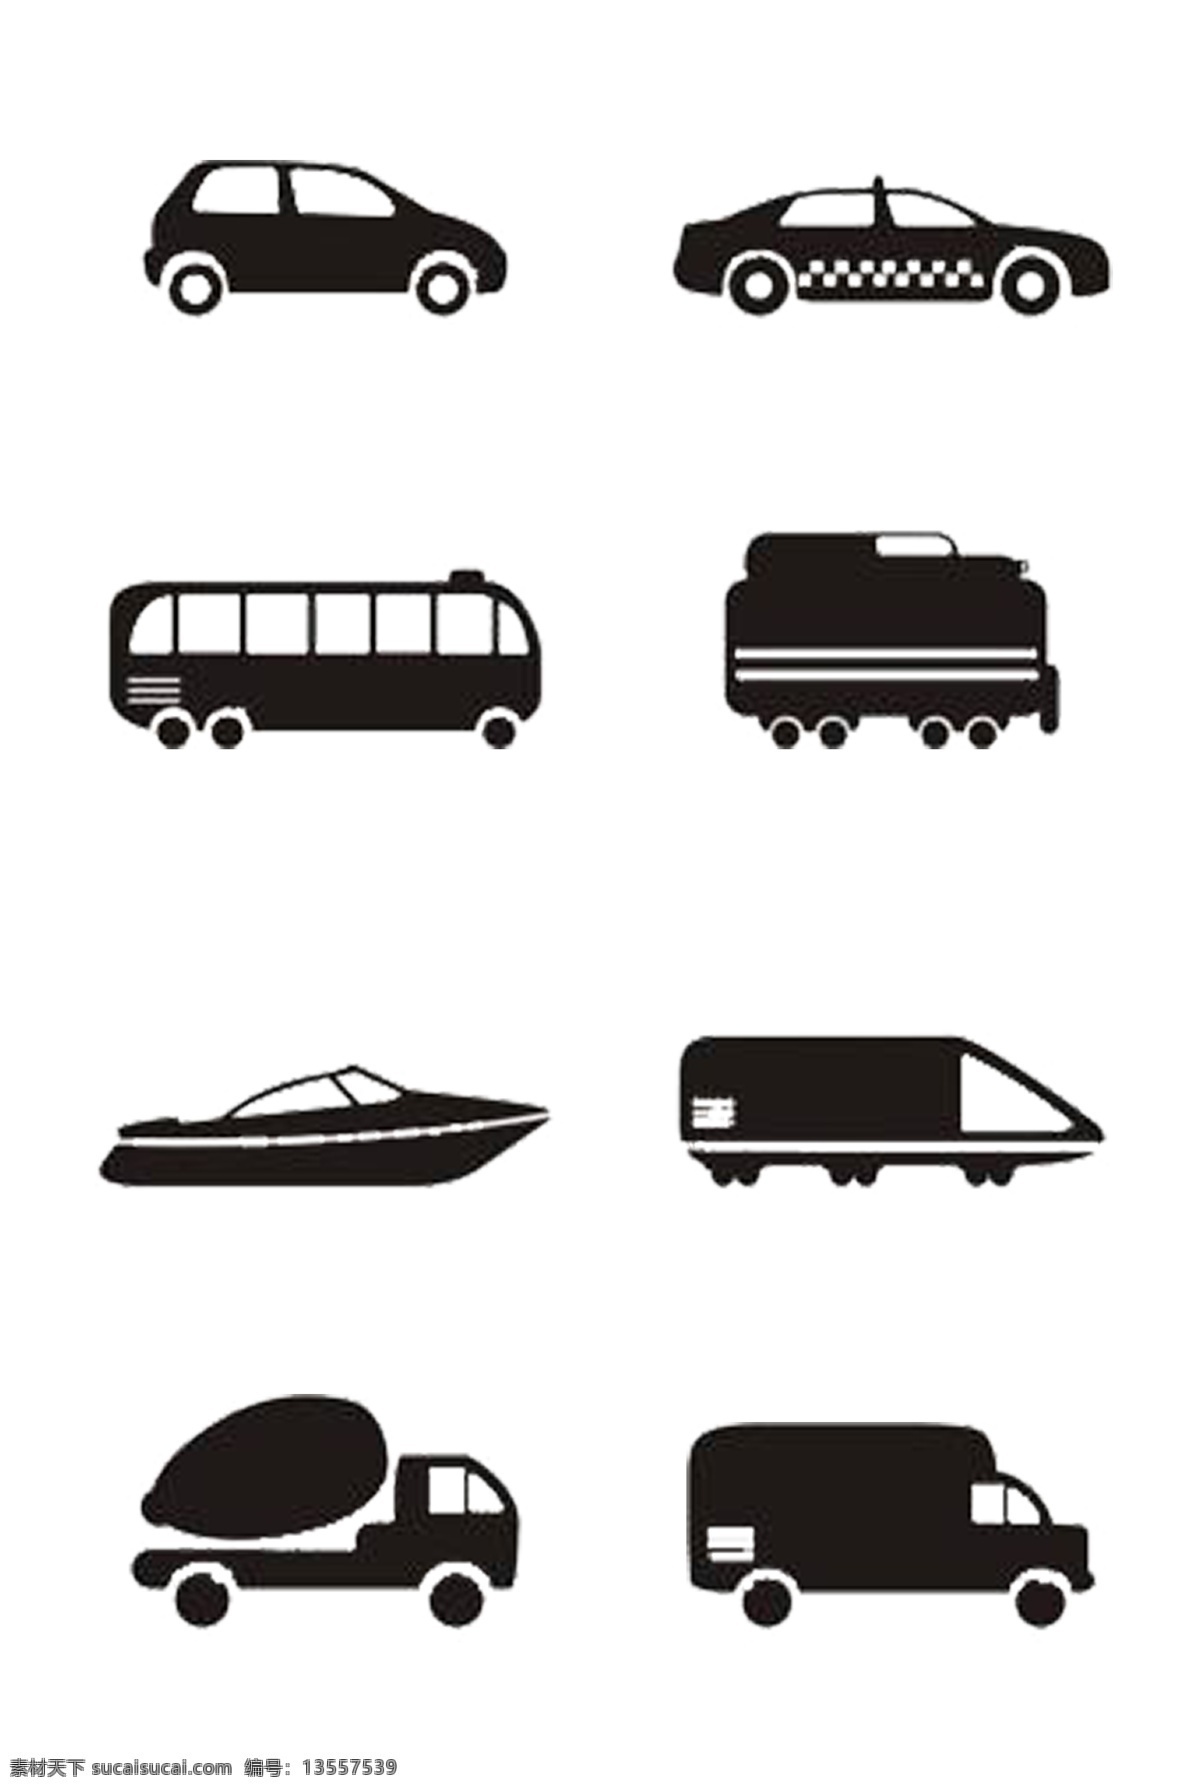 黑白 汽车 图标 大全 小汽车 私家车 大巴车 火车 轮船 托运车 大卡车 简单 可分开使用 可用作装饰 免抠